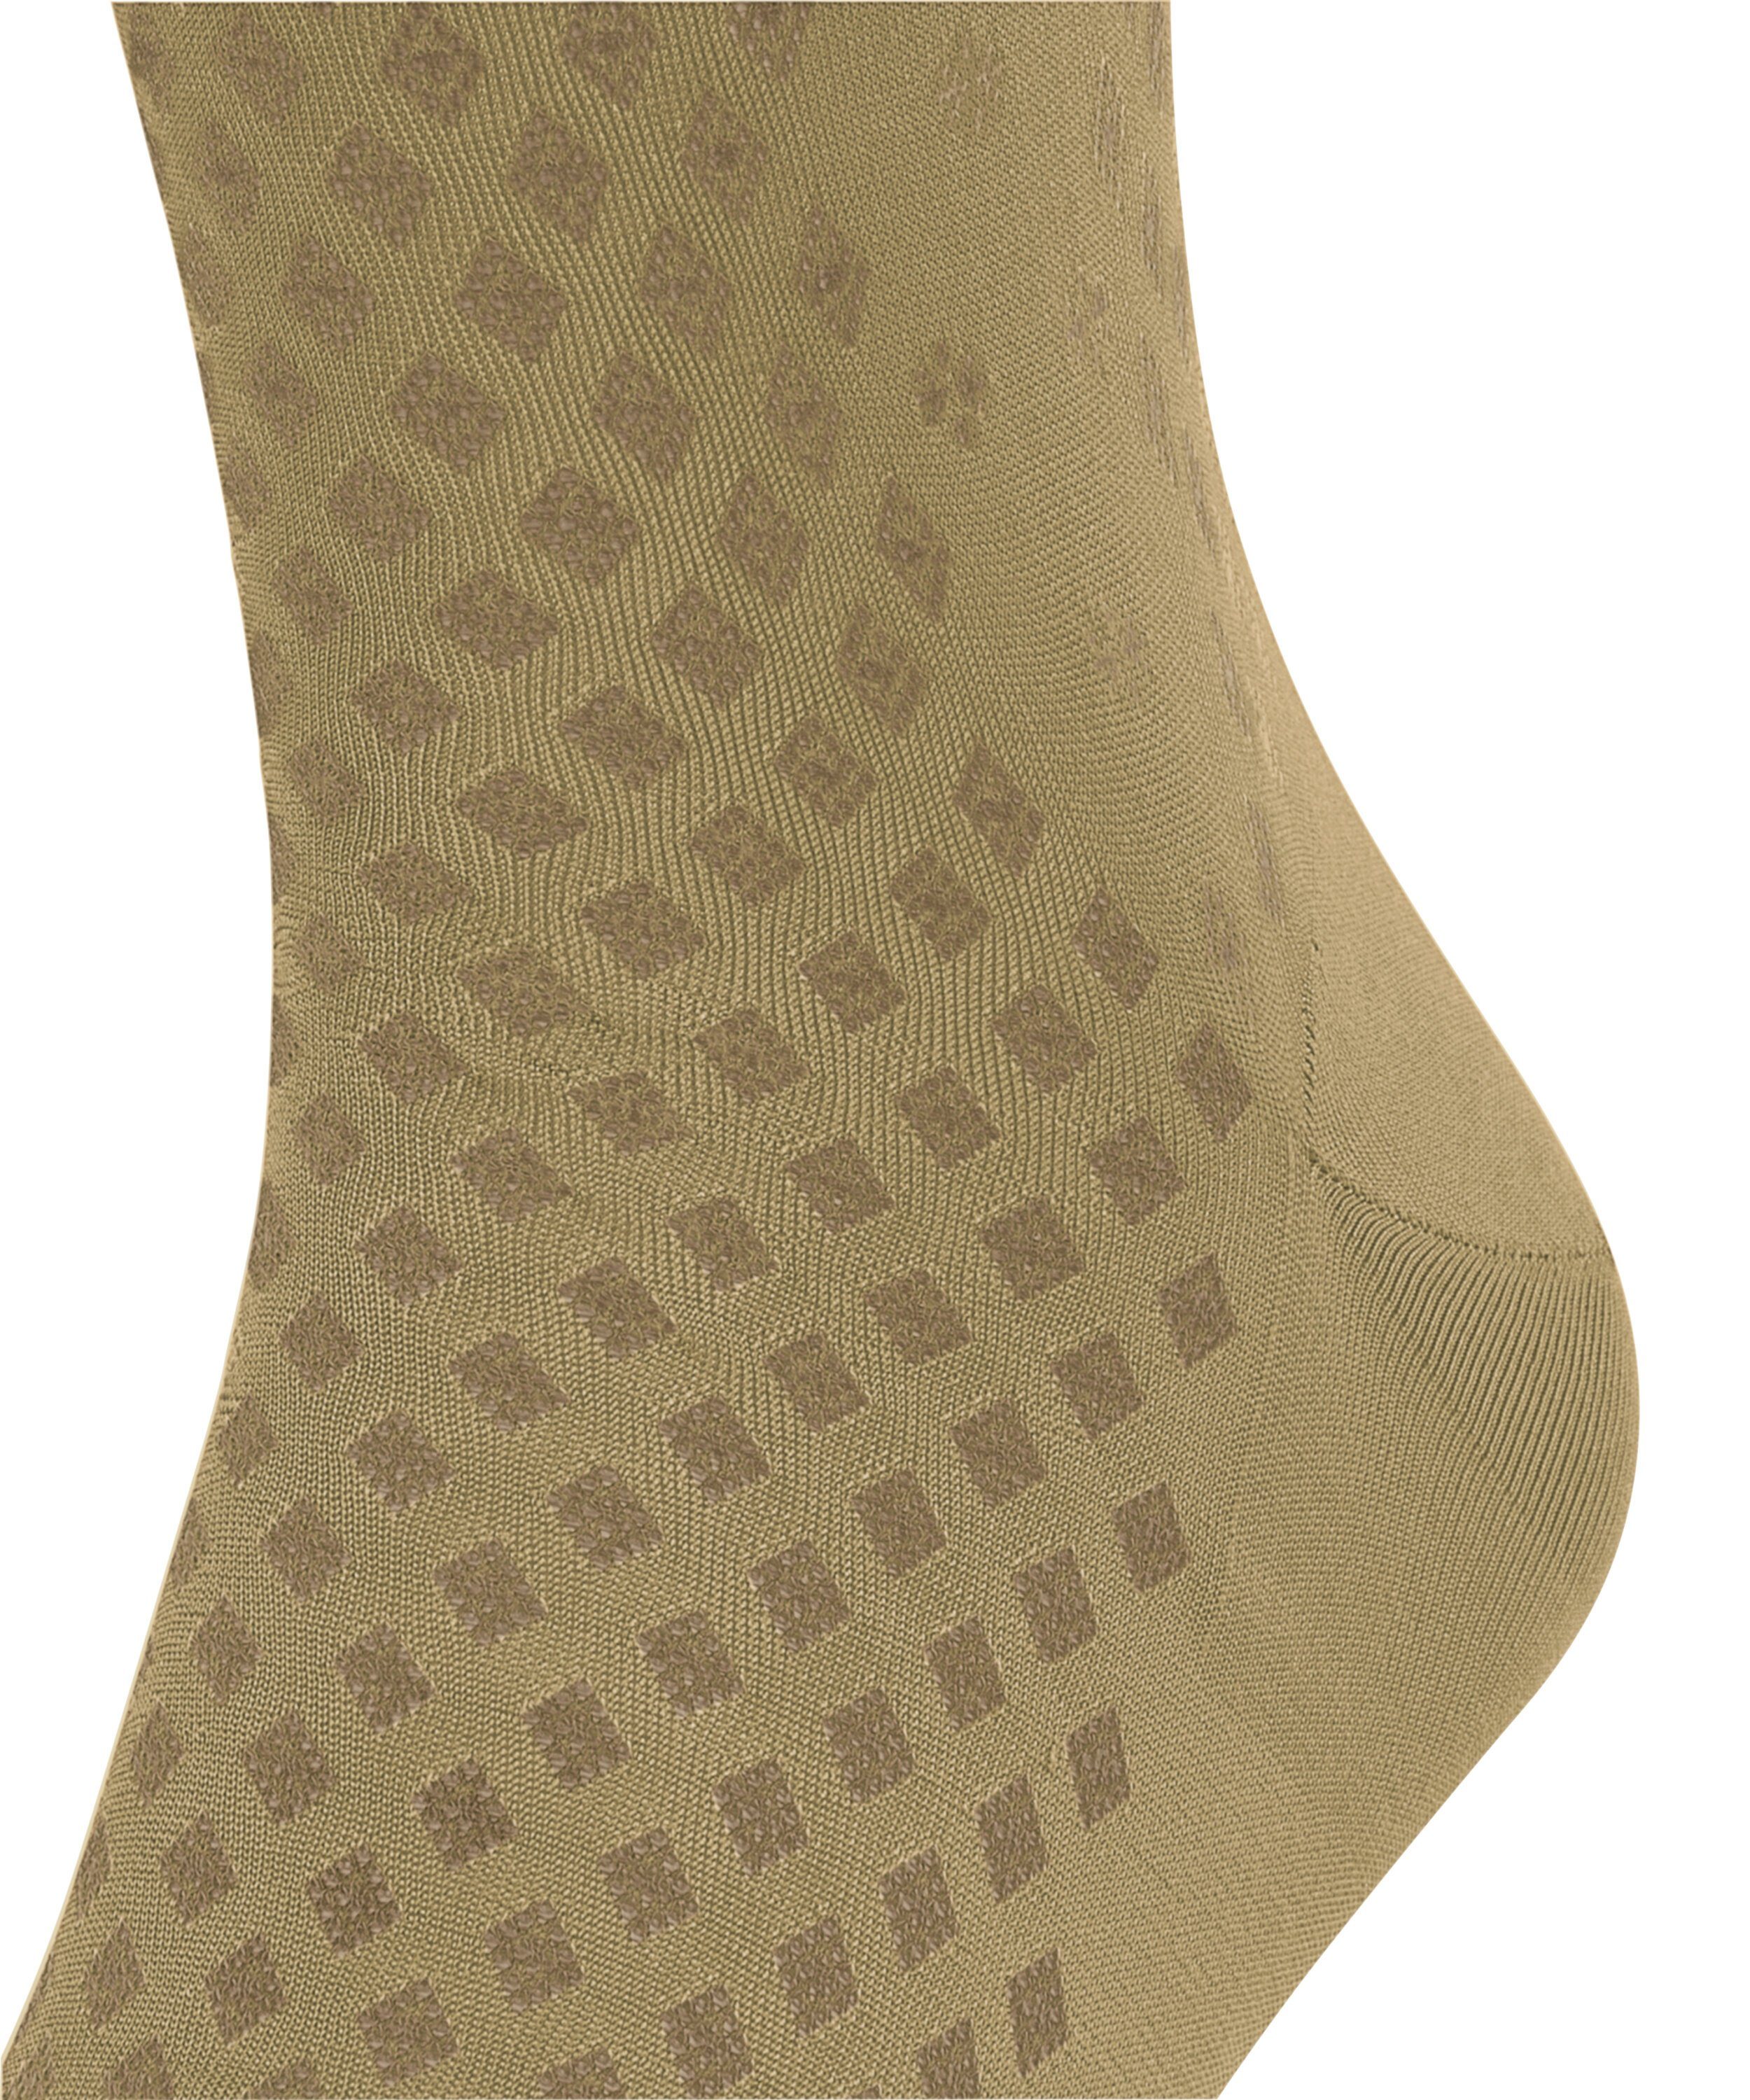 Classy (1-Paar) FALKE Type Socken